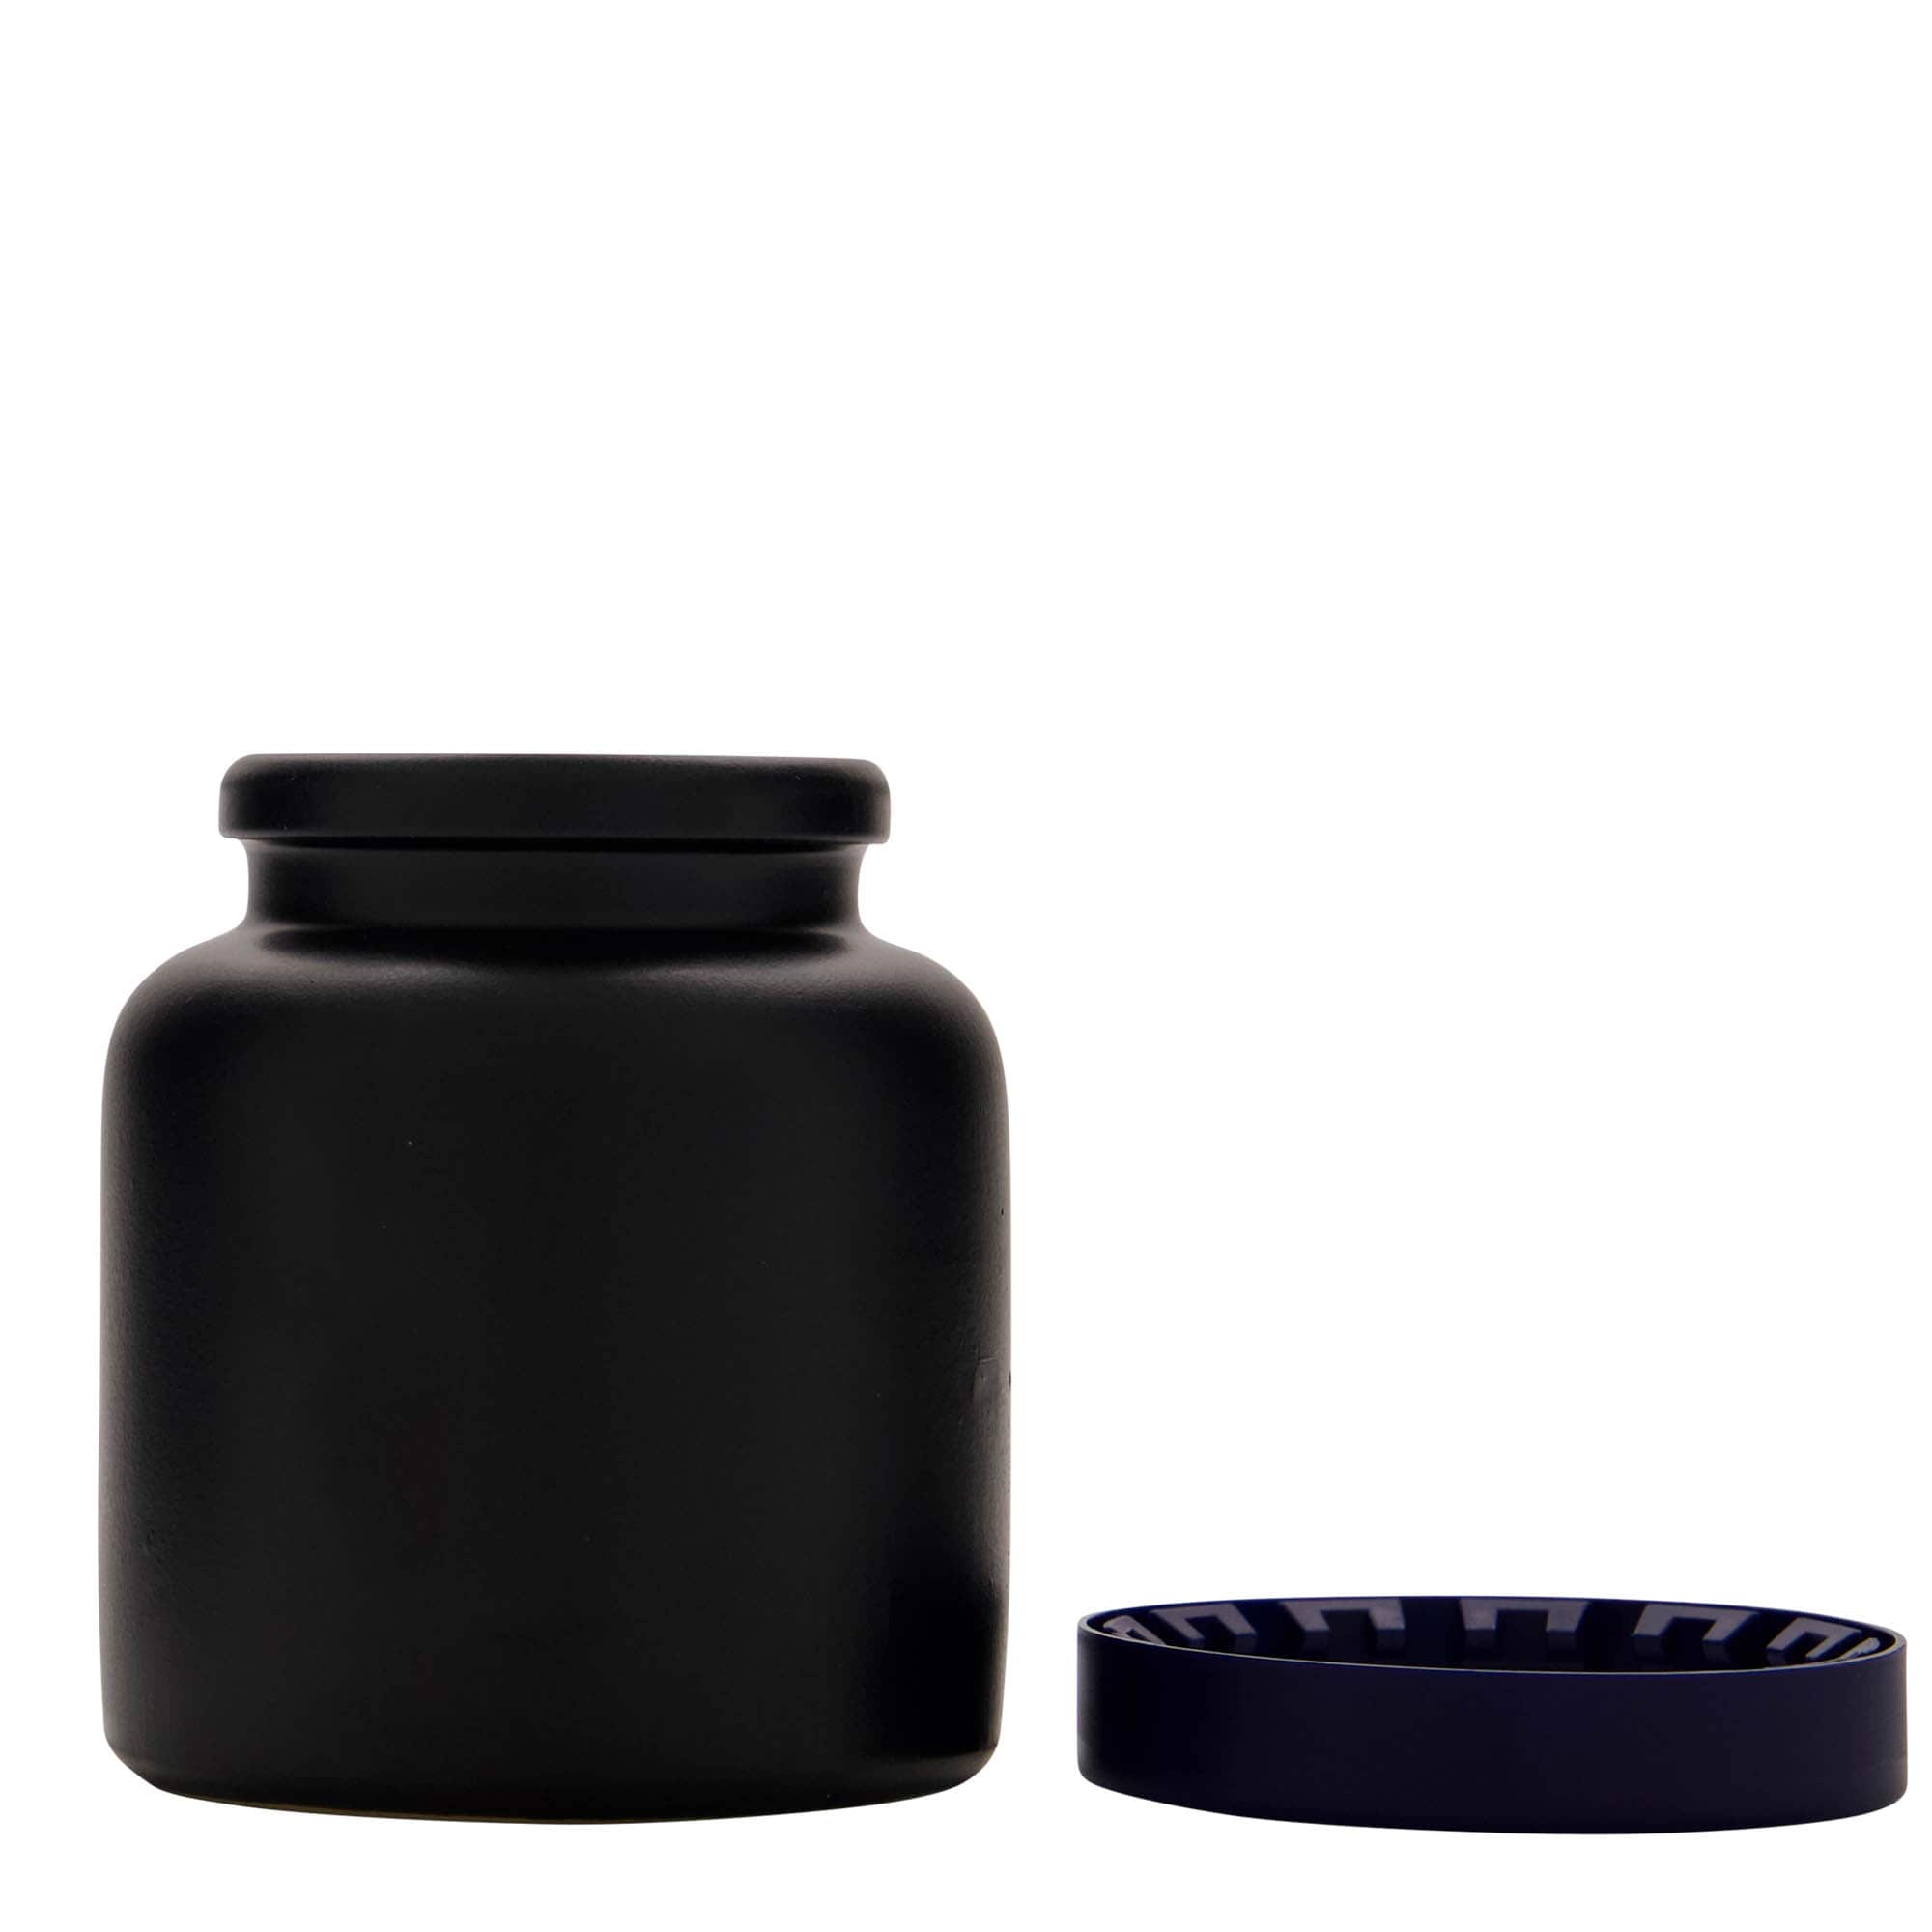 270 ml Vasetto in ceramica/grès, nero, imboccatura: coperchio a calotta